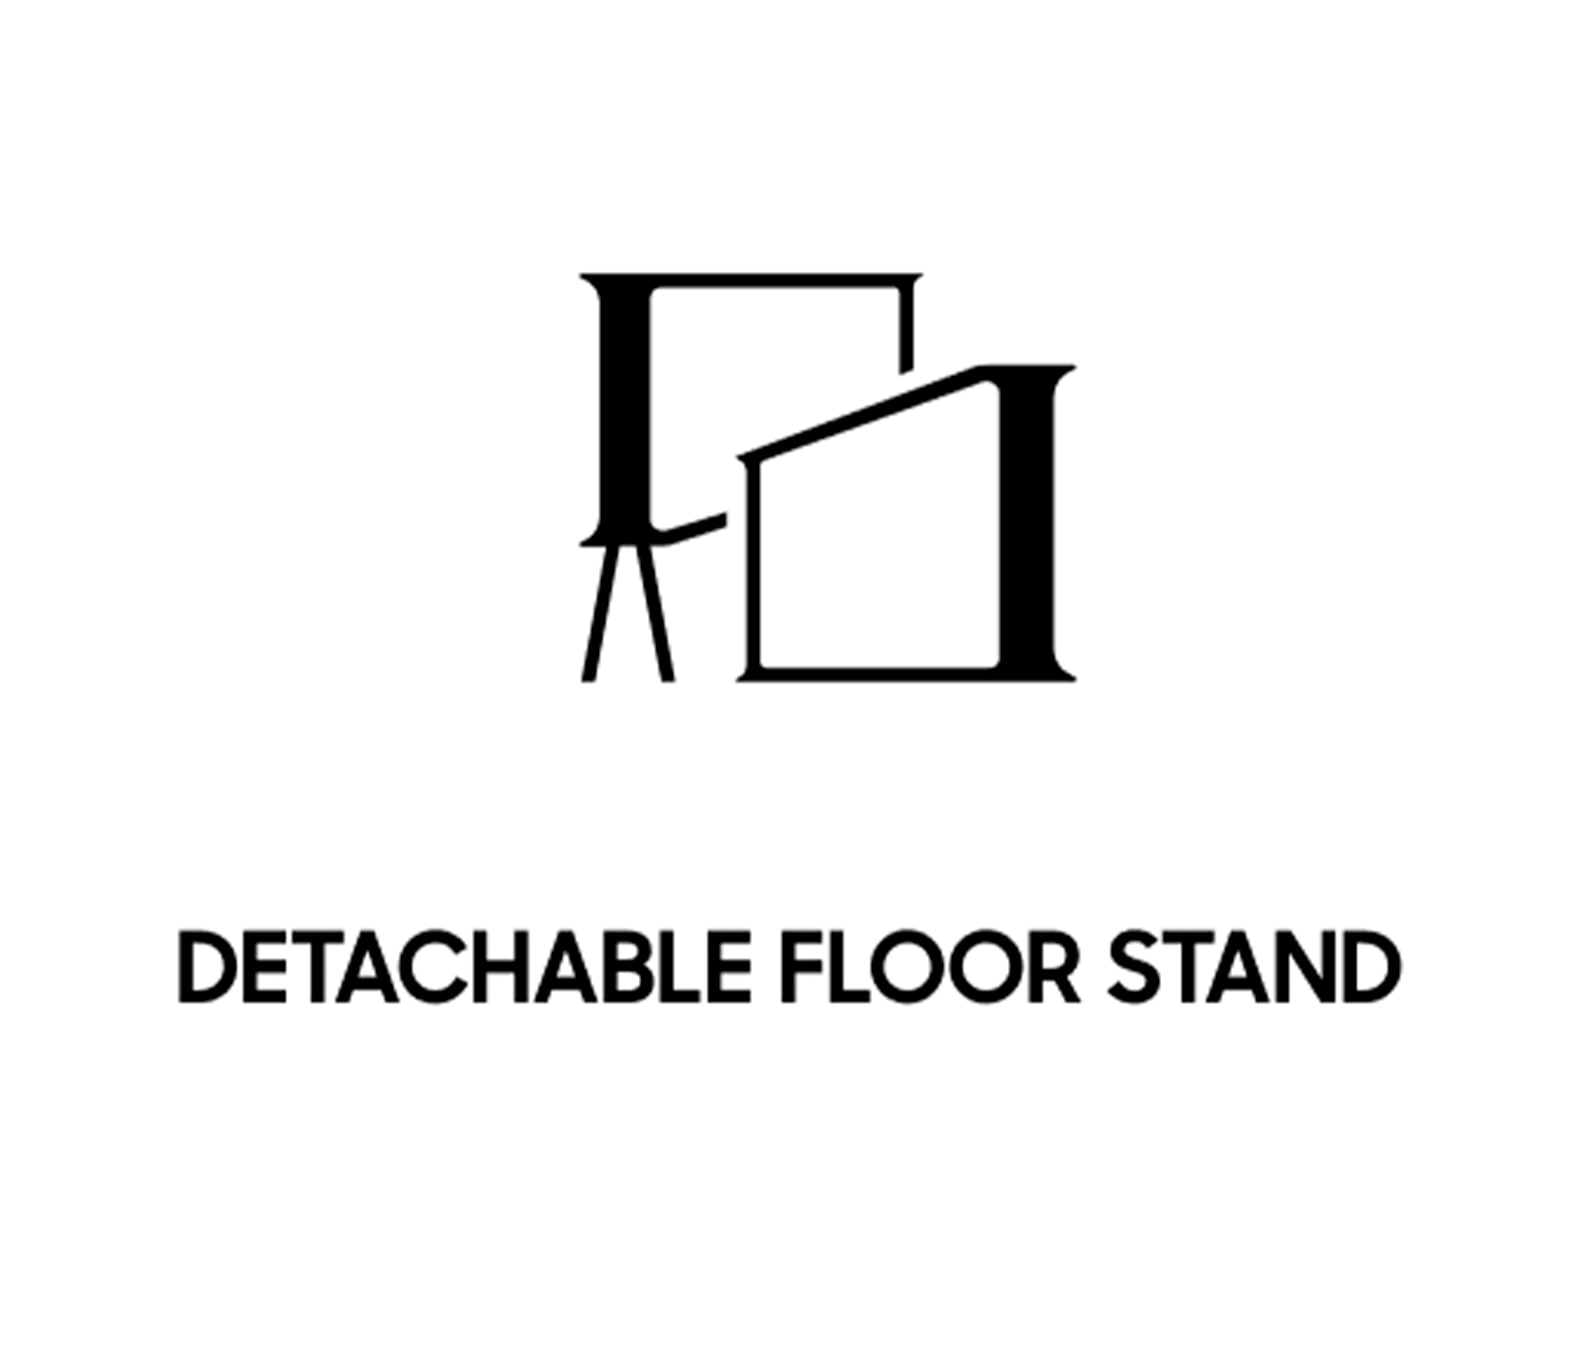 Detachable floor stand - Icon